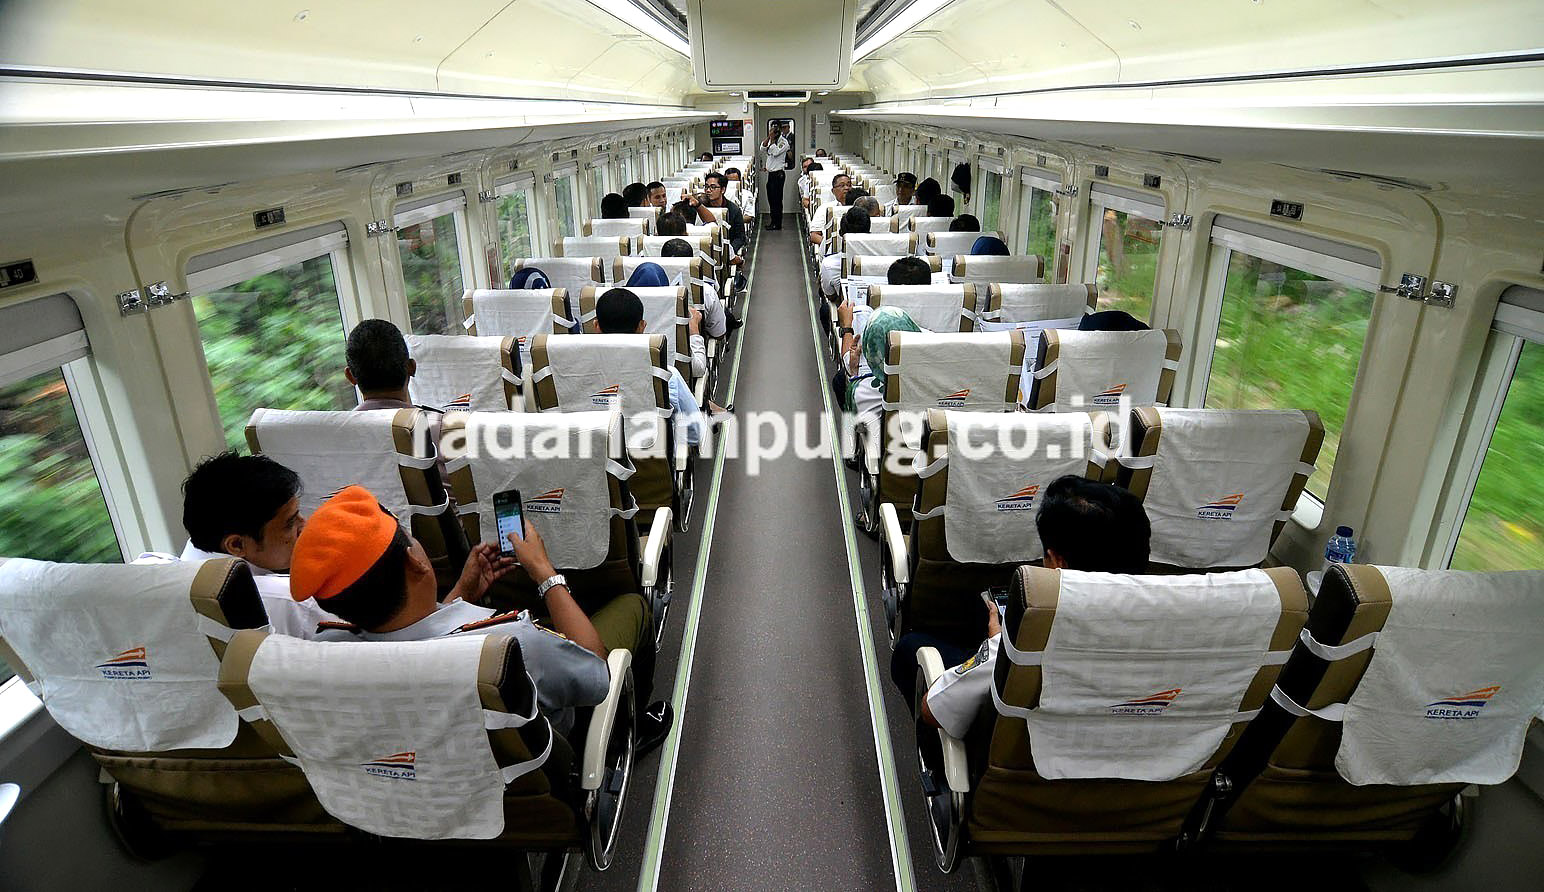 Cek Jadwal dan Harga Tiket Kereta Api Lebaran di Lampung